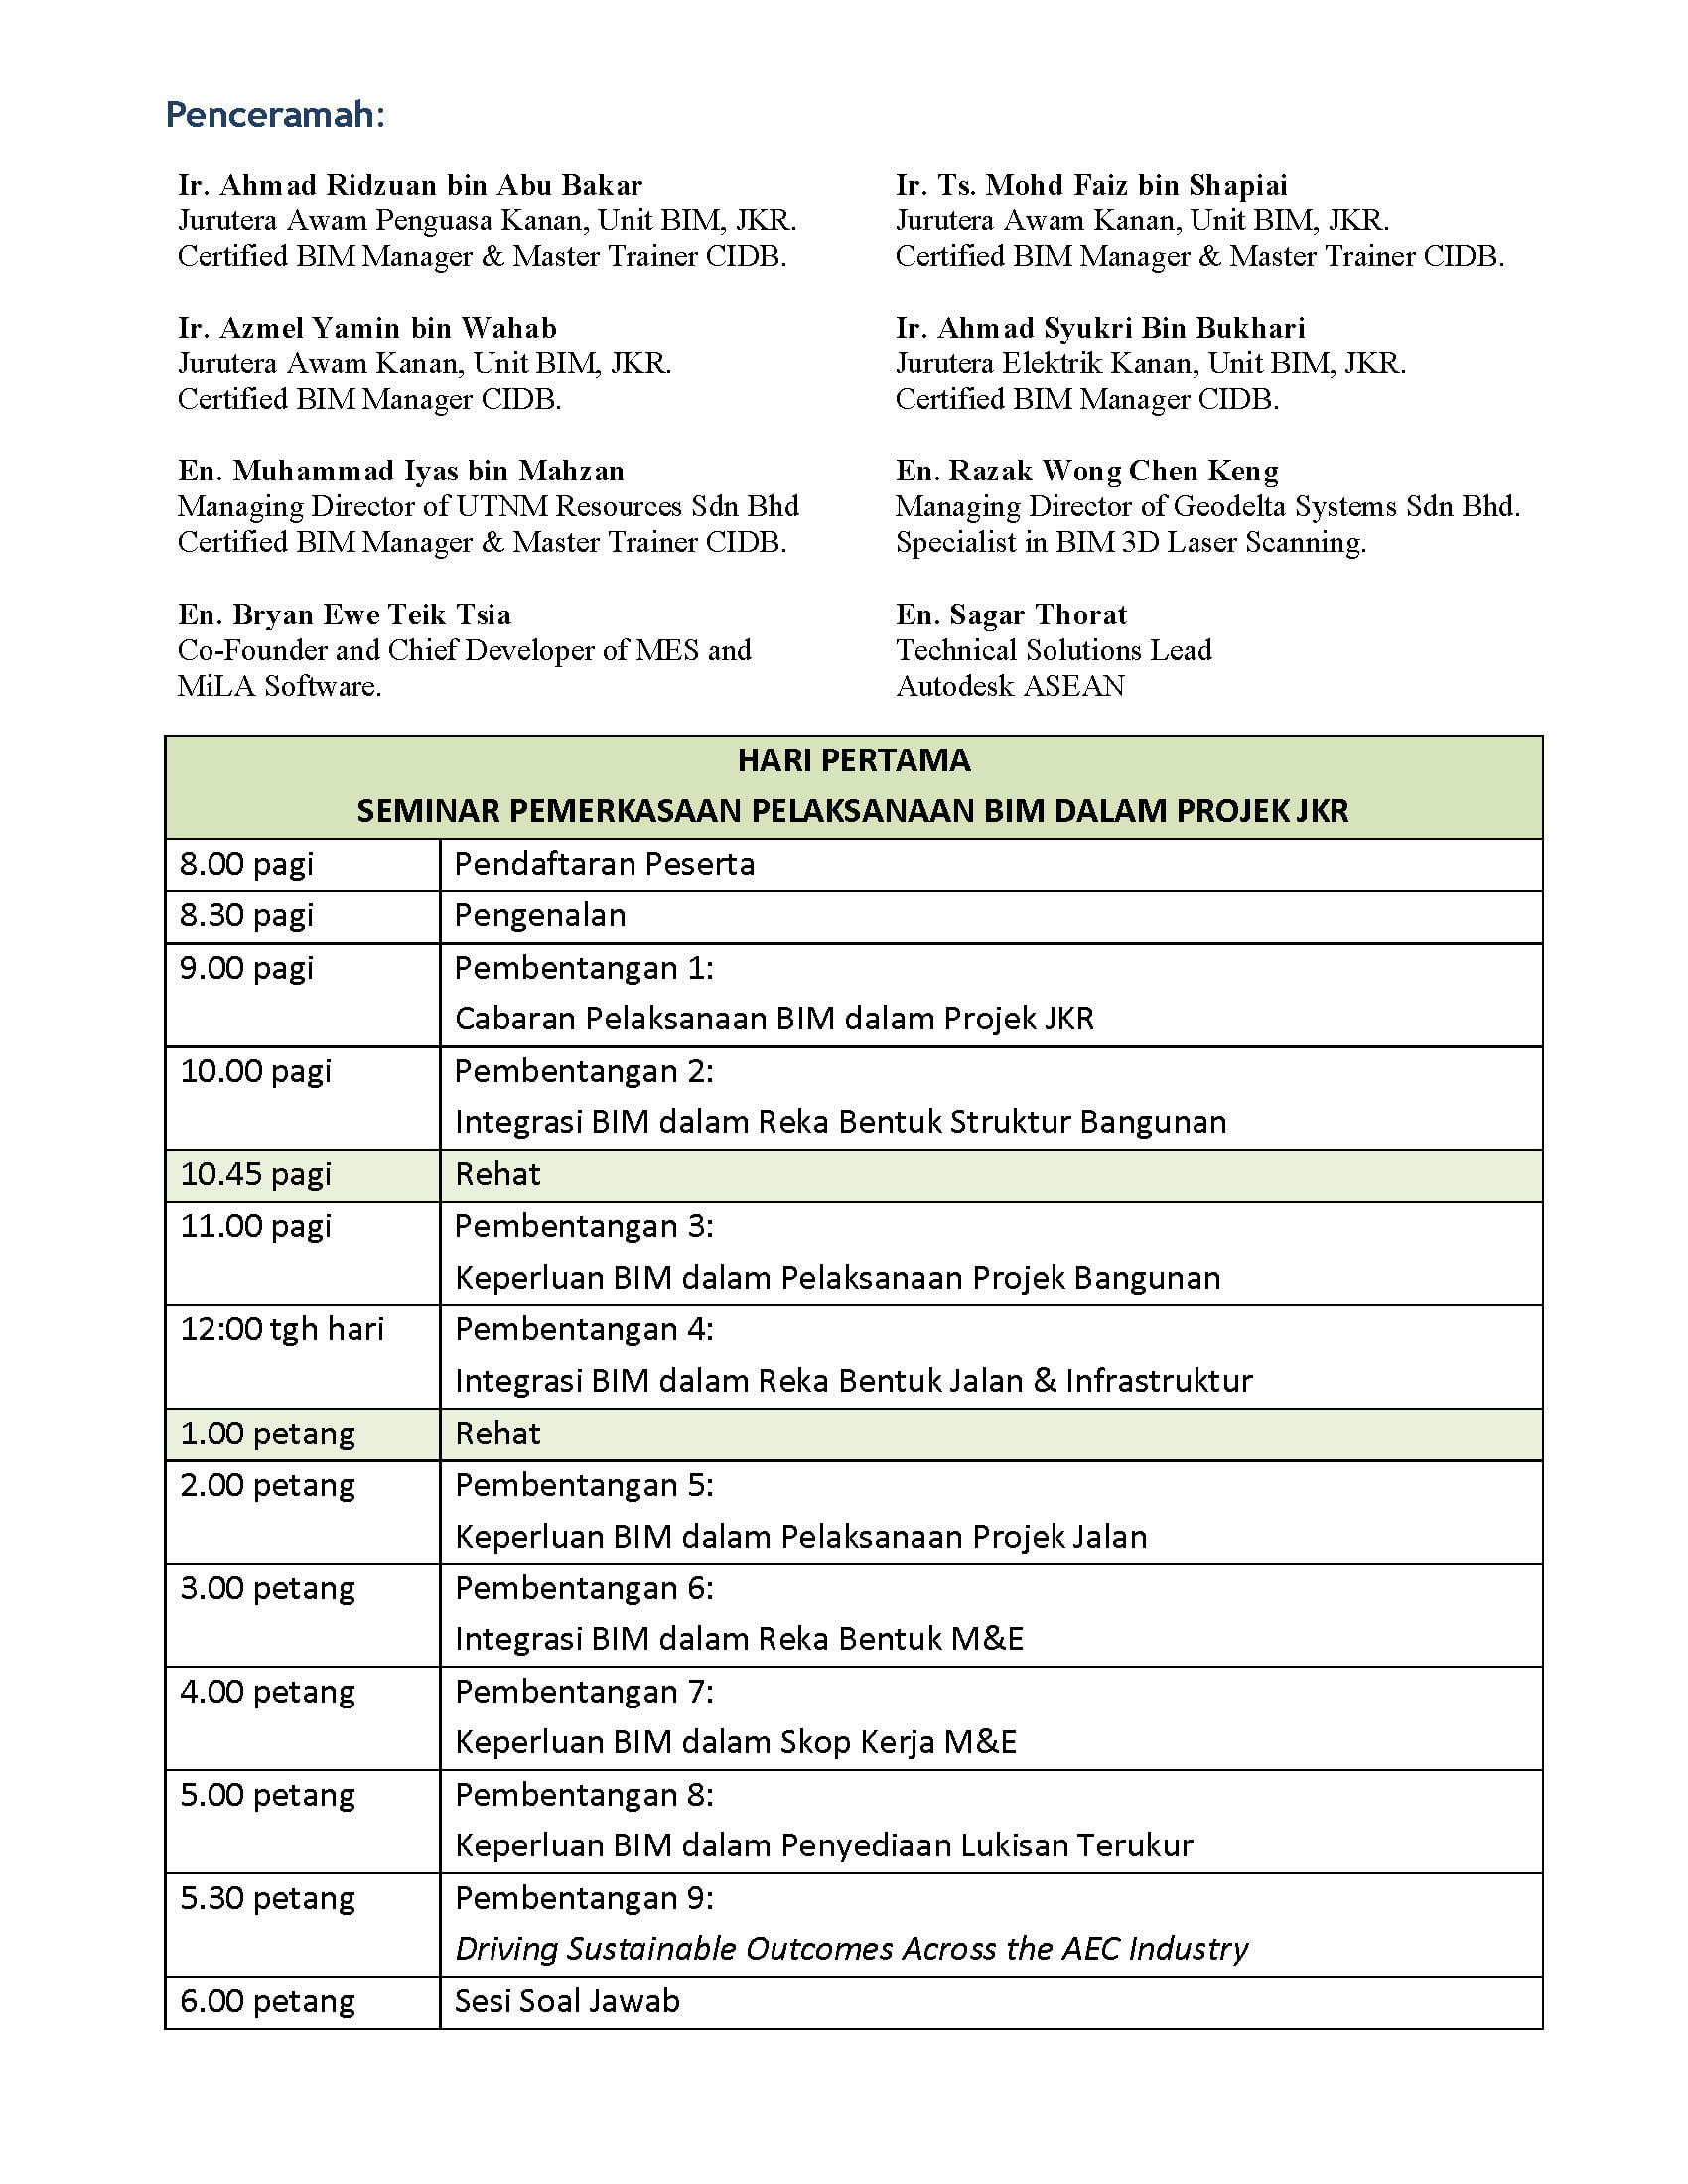 JKR BIM Seminar Ed2 Flyer_Page_2 JKR BIM Seminar Edition 2